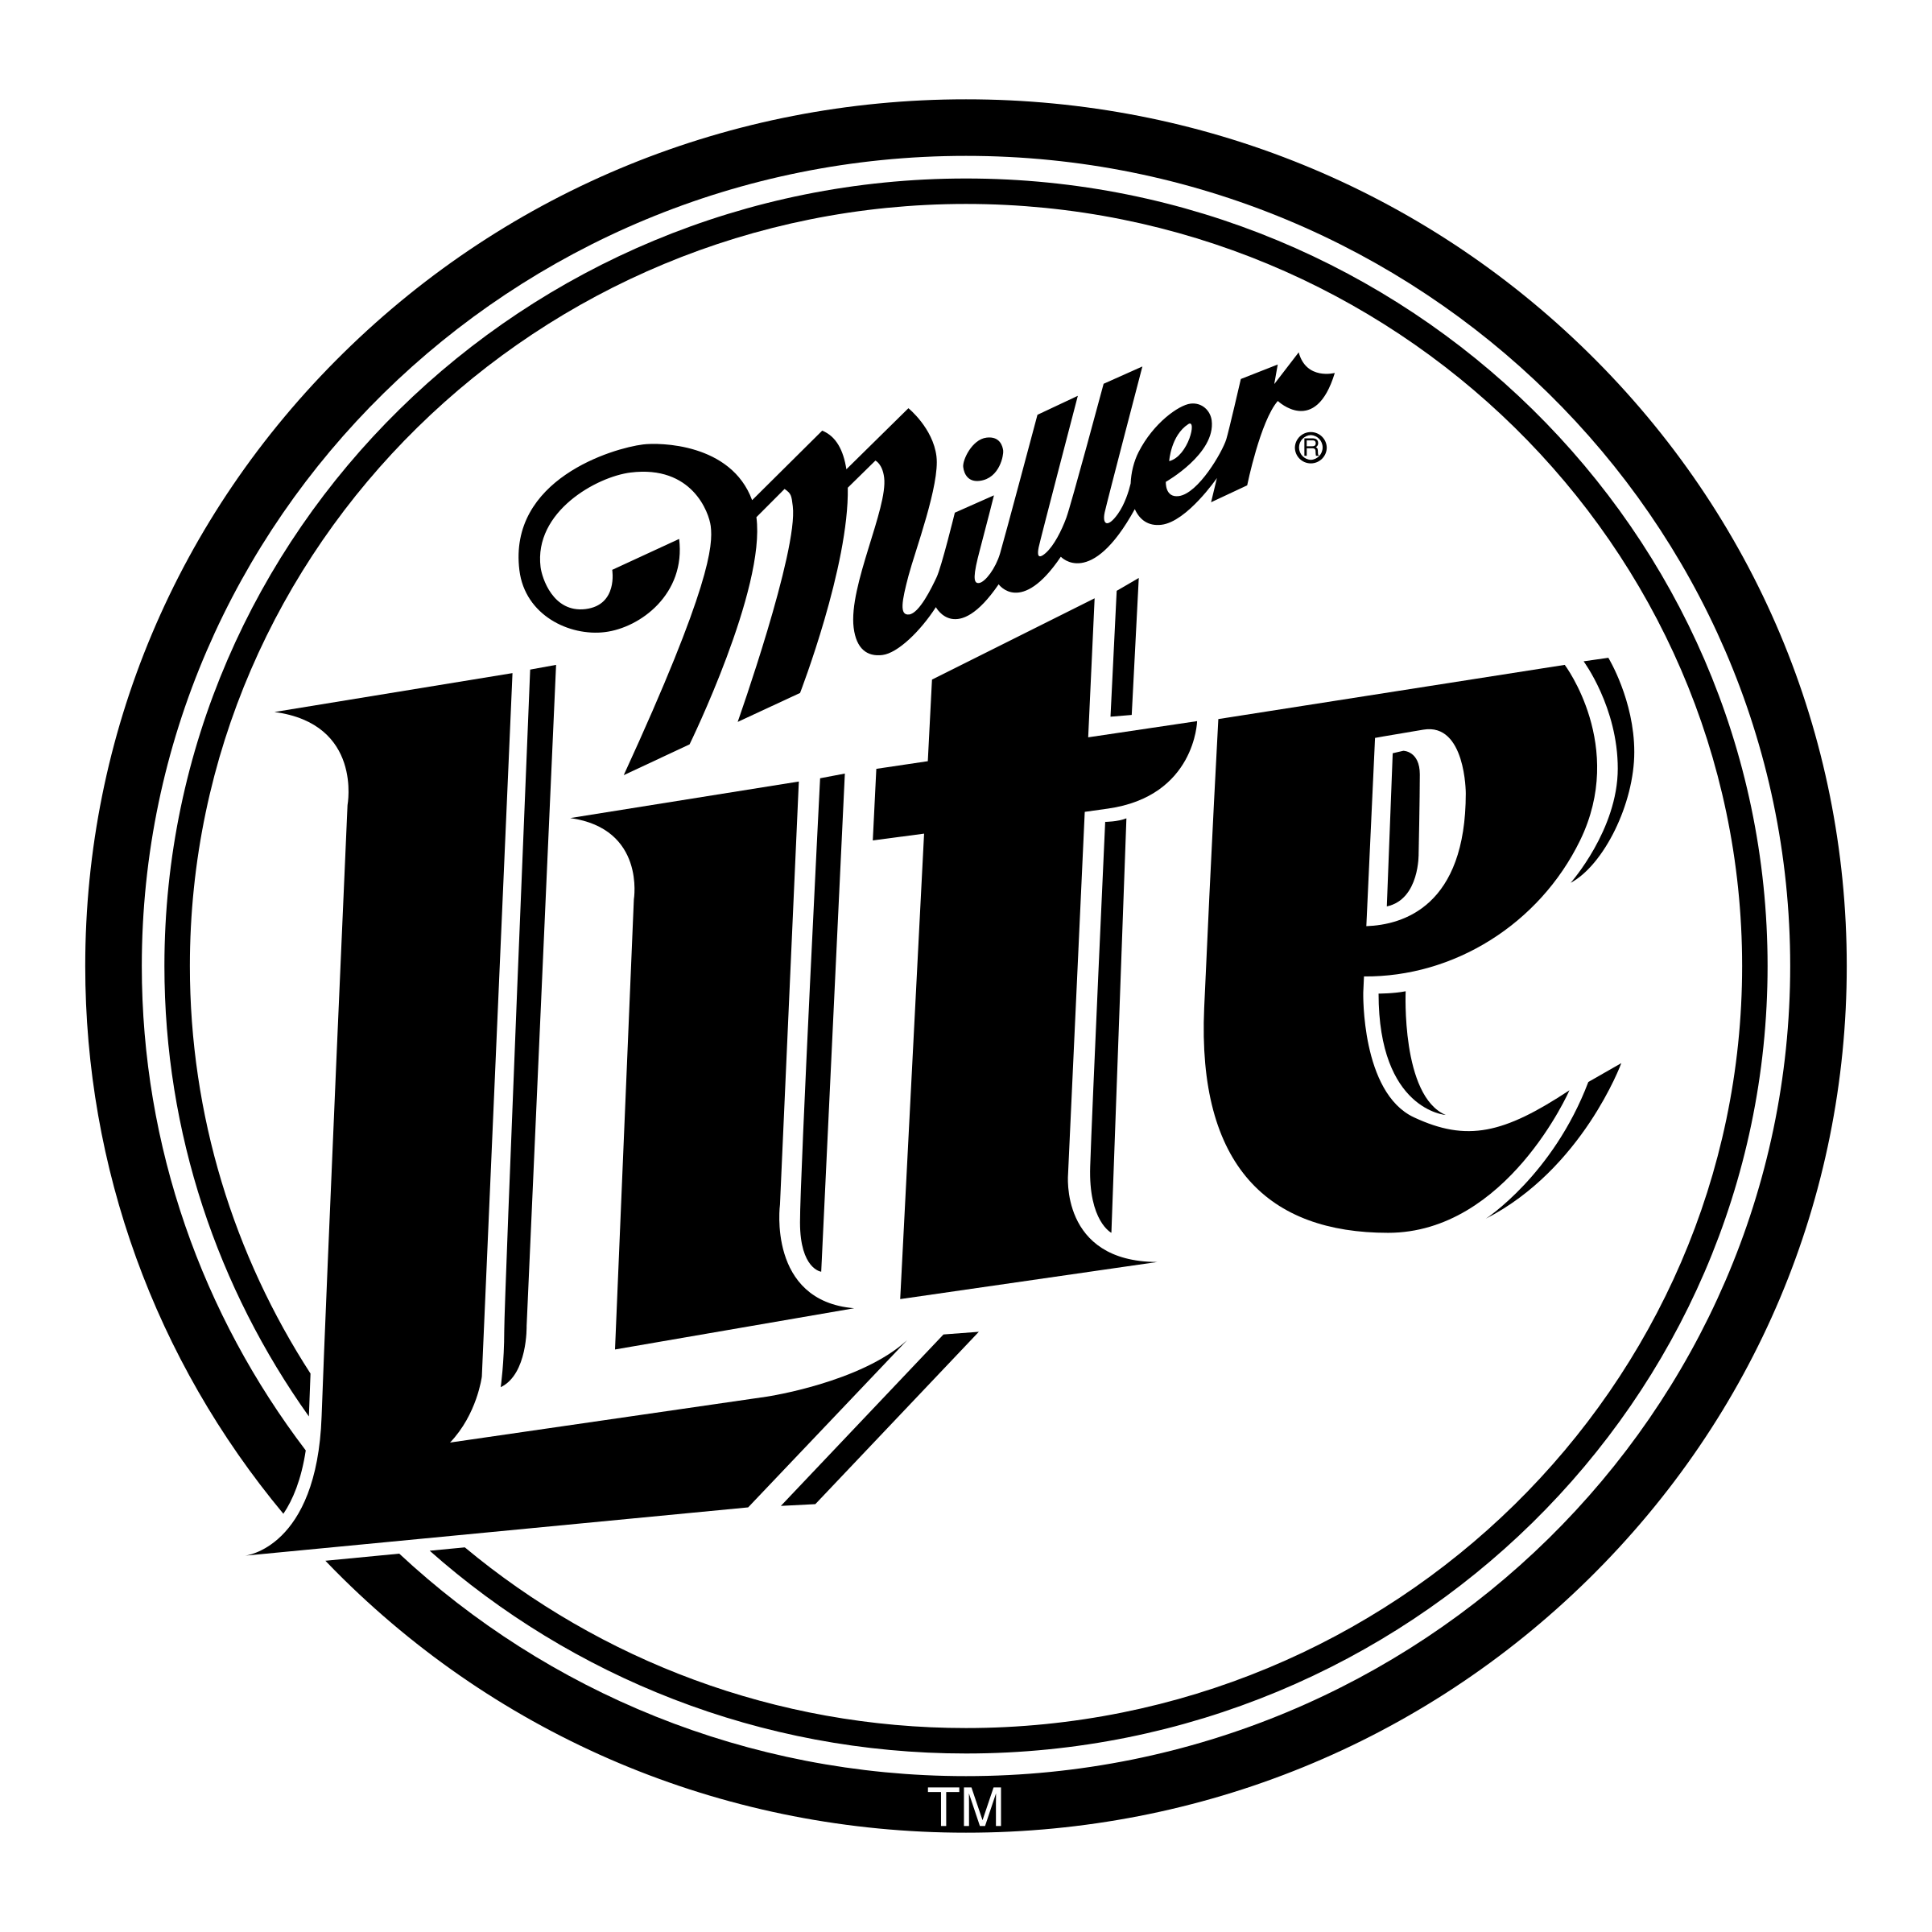 Lite Logo - Miller Lite Logo PNG Transparent & SVG Vector